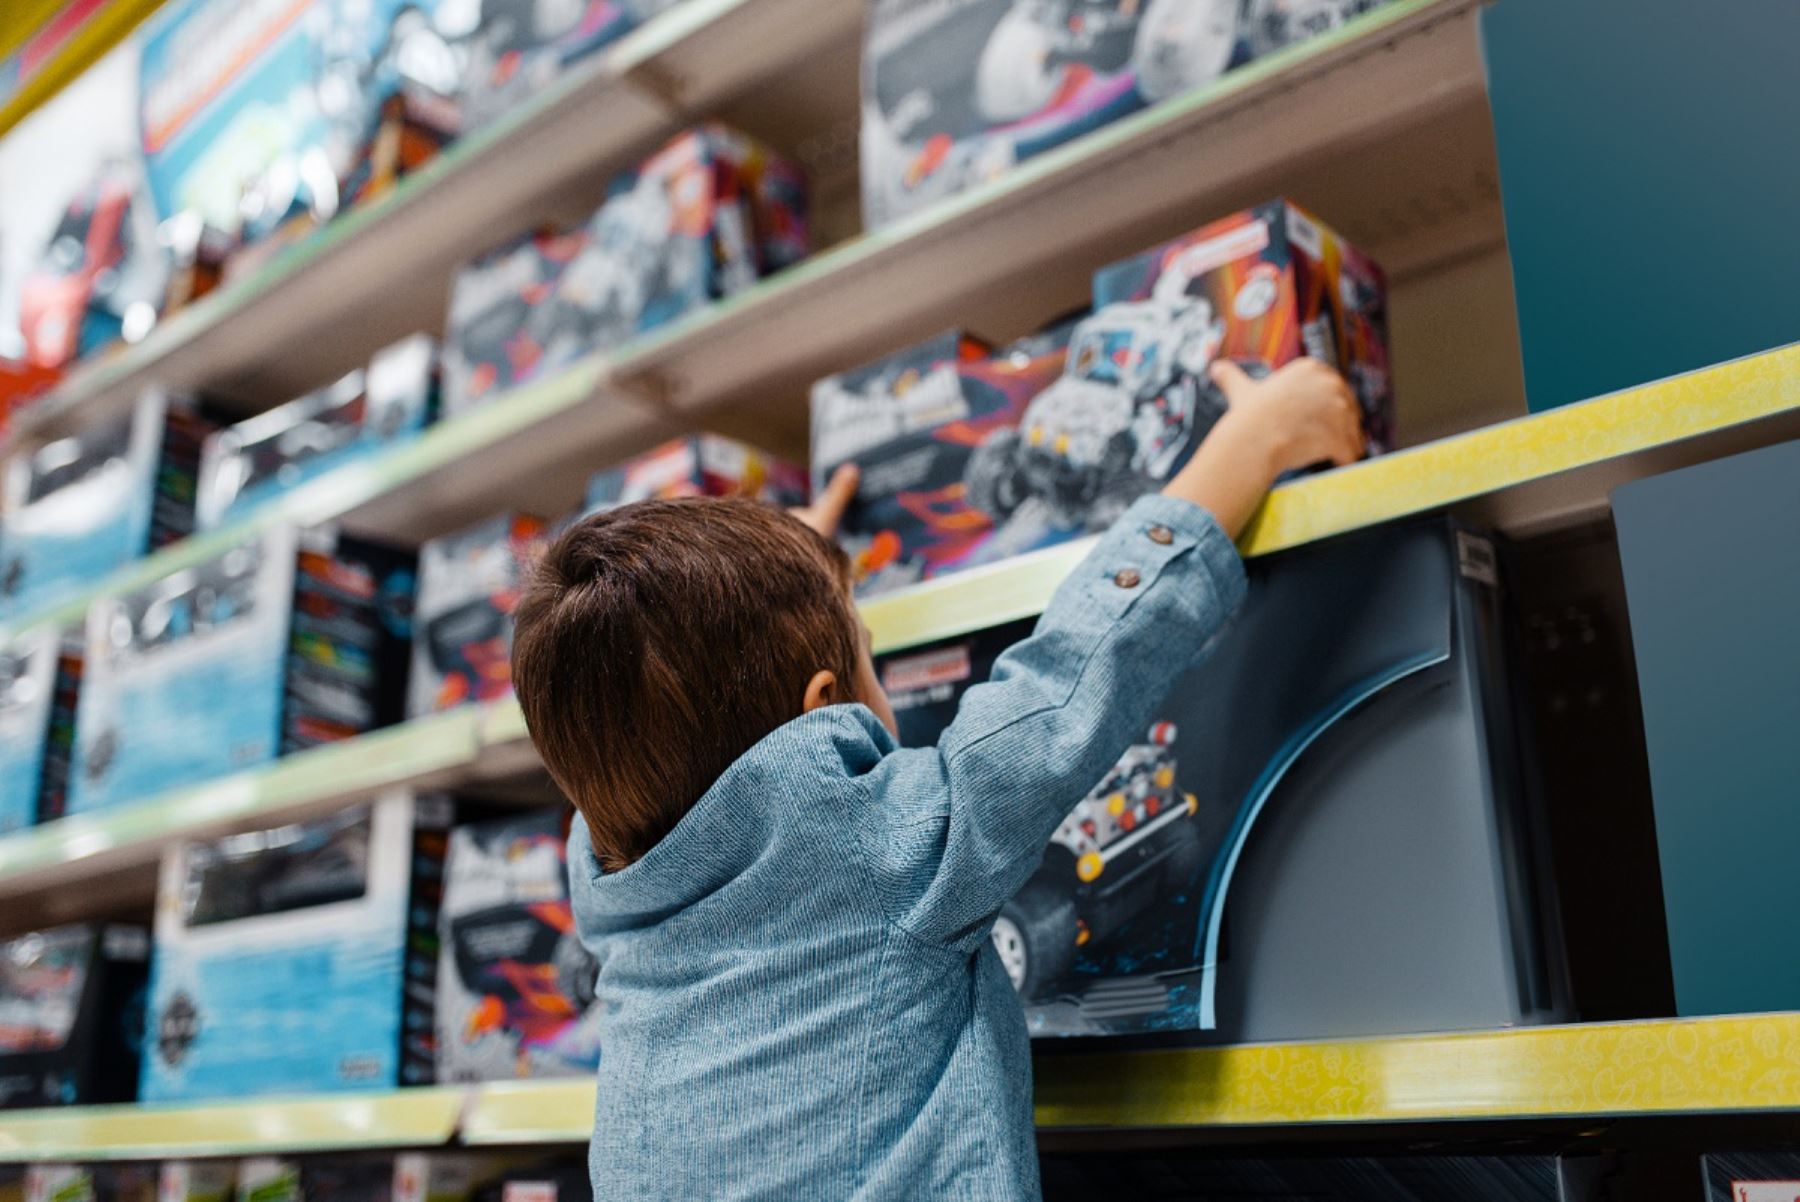 A la hora de comprar un juguete para los niños hay que tener en cuenta la seguridad y calidad. Foto: Cortesía.